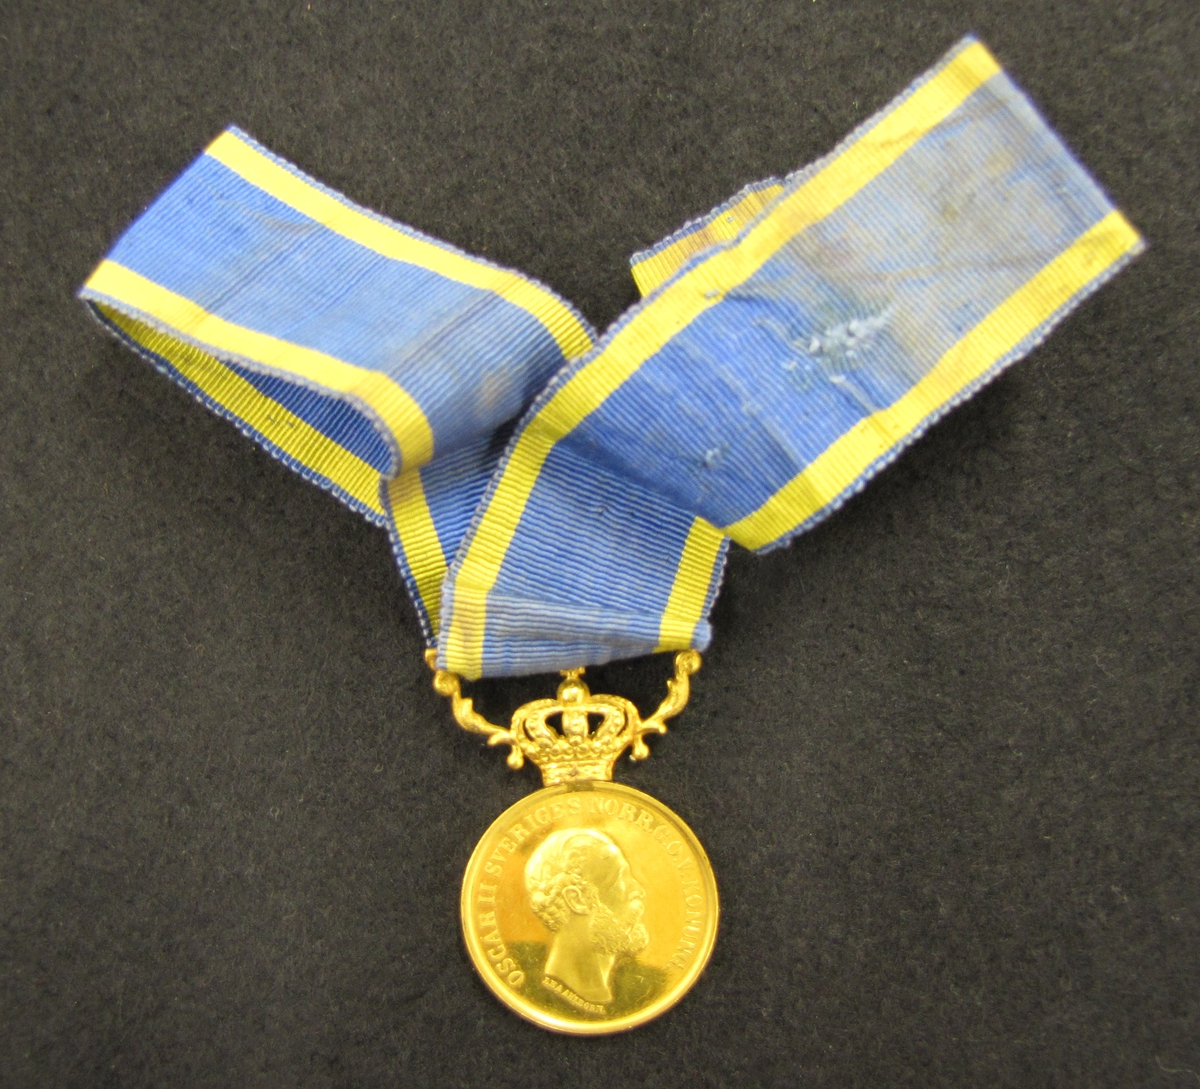 Medalj med blågult band. Medaljen är av 5:e storleken i sitt numera mycket sällsynta originaletui, utdelad 1880 till Lotsen Johan Fredrik Kafvelström (1823-10-03 - 1899-02-07) i Vänersborg. 

Medaljen är av 23 K guld och krona och bärornament av 18 K guld och monterat med sitt originalband vilket Kafvelström av bevarade fotografier bar monterat i en rosett, viket normalt endast brukas av damer.

Medaljen "För berömliga gärningar" instiftad 1803 men kom först till användning 1842 då storlekarna 8 & 5 infördes. Medaljen utdelades i såväl guld som silver. Vilken av dem räddningsmannen tilldelades berodde givetvis på bragdens betydelse och i vilken livsfara även den räddande och den räddade befunnit sig vid olyckan. Den räddandes sociala ställning hade även, märkligt nog, betydelse för vilken av de olika storlekarna som utdelades.

X På framsidan: Oskar II:s bild. På frånsidan: Berömliga gerningar till J F Kafvelström Lots

Bilagor: VM 16978
Tidningsklipp, foto av Lotsen J F Kafvelström, intervju med Arndt Winberg (barnbarn till Kafvelström), bandinspelning.

Släktingarna till Losten J. F Kafvelström. Barnbarn: Arndt, Anna-Greta, Karin och John Winberg, Uddevalla, Barnbarns barn: Frank Larsson, Vänersborg.